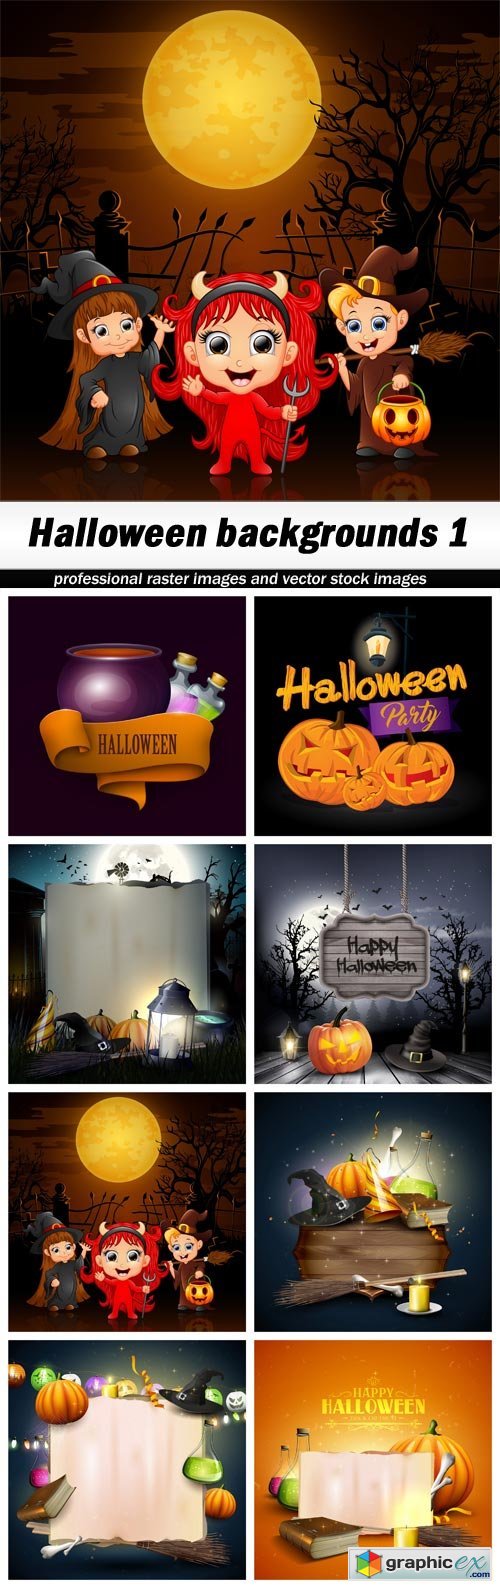 Halloween backgrounds 1 - 8 EPS